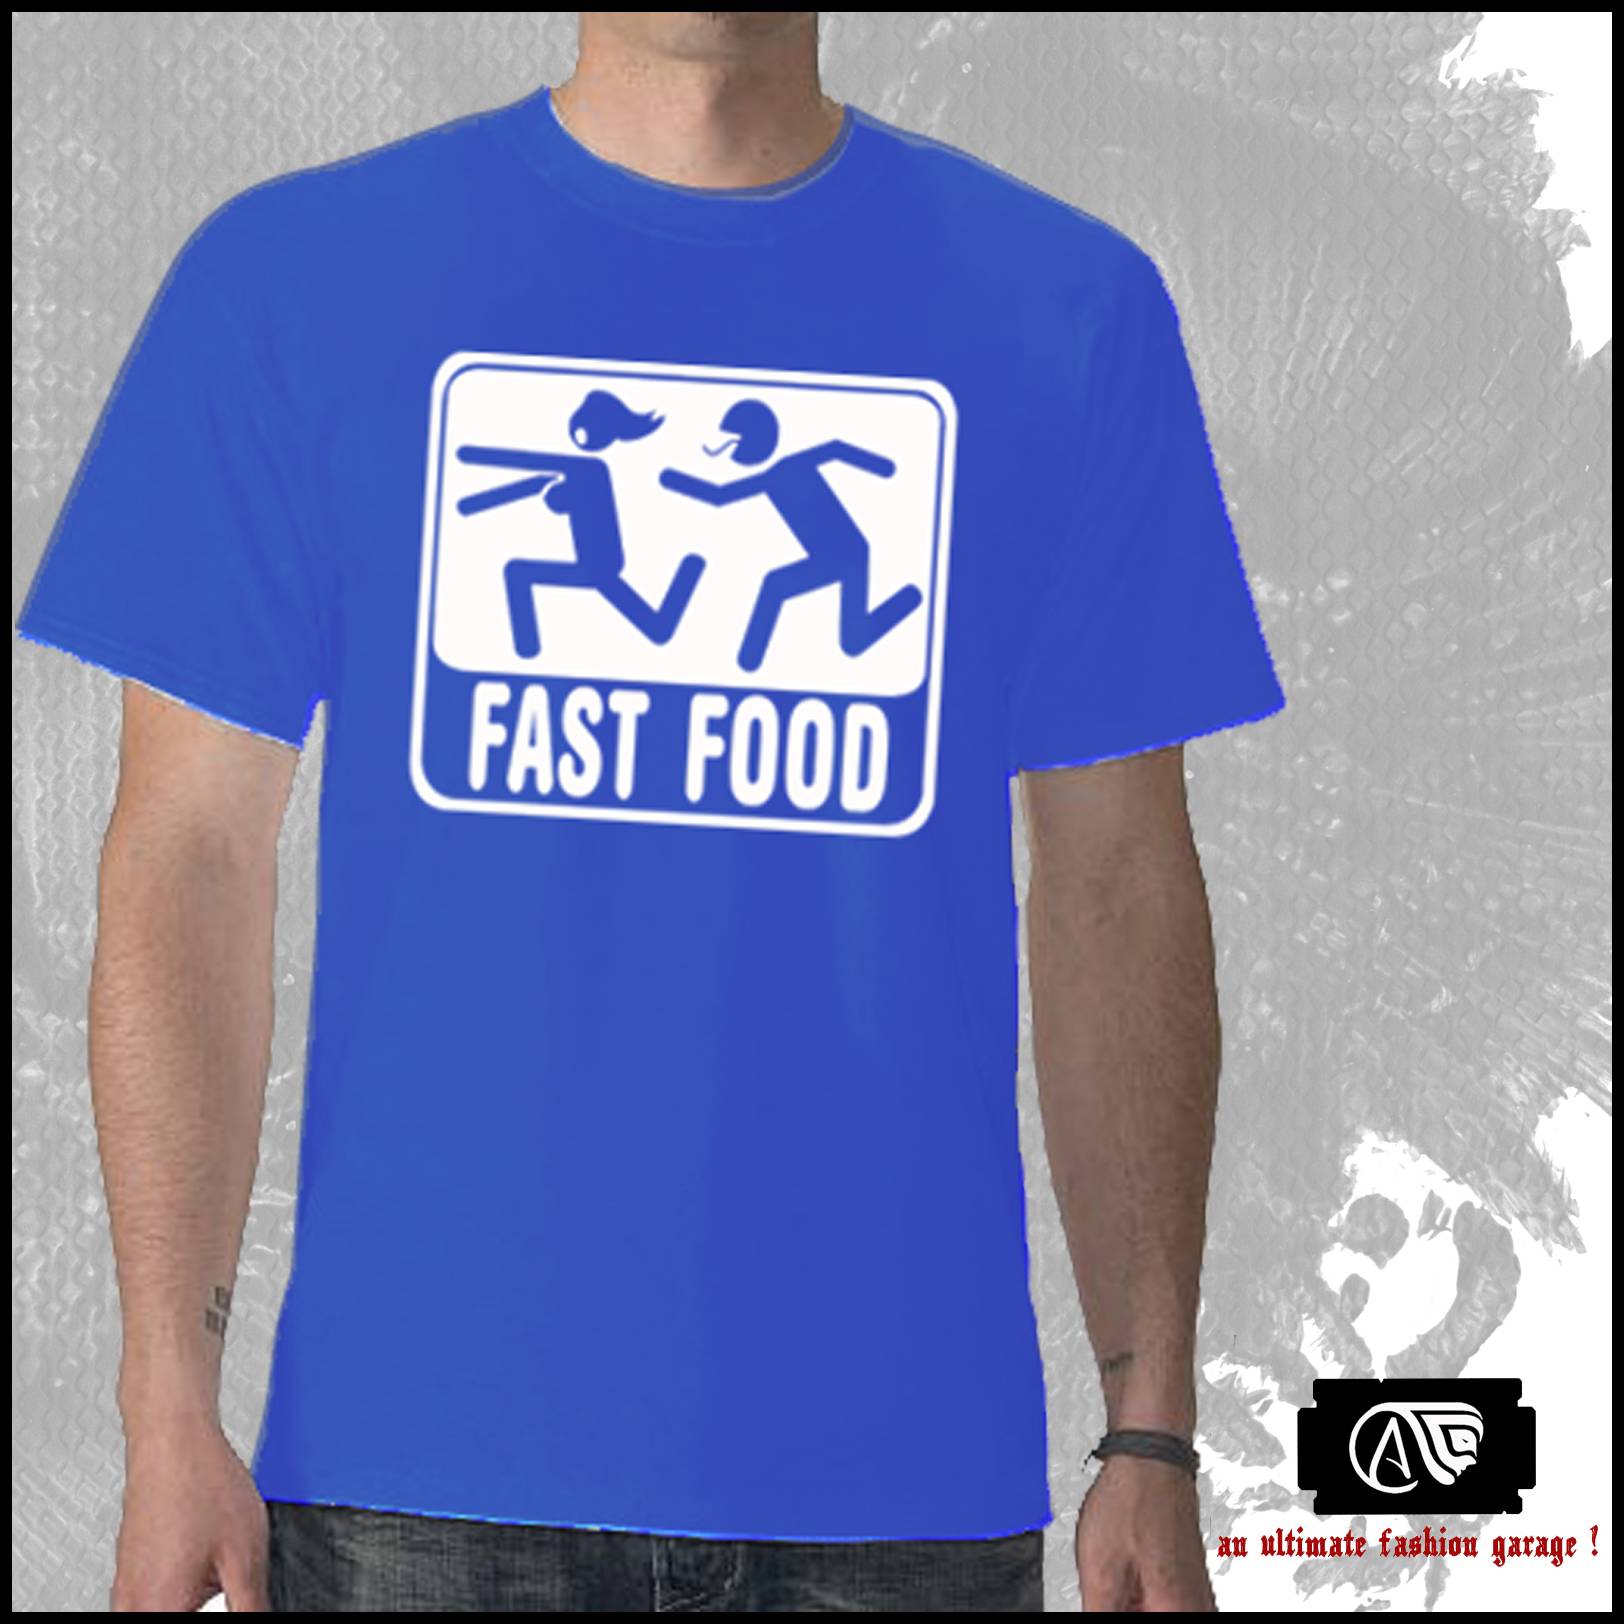 Fast Food - Size - M L XL DXL  large image 0